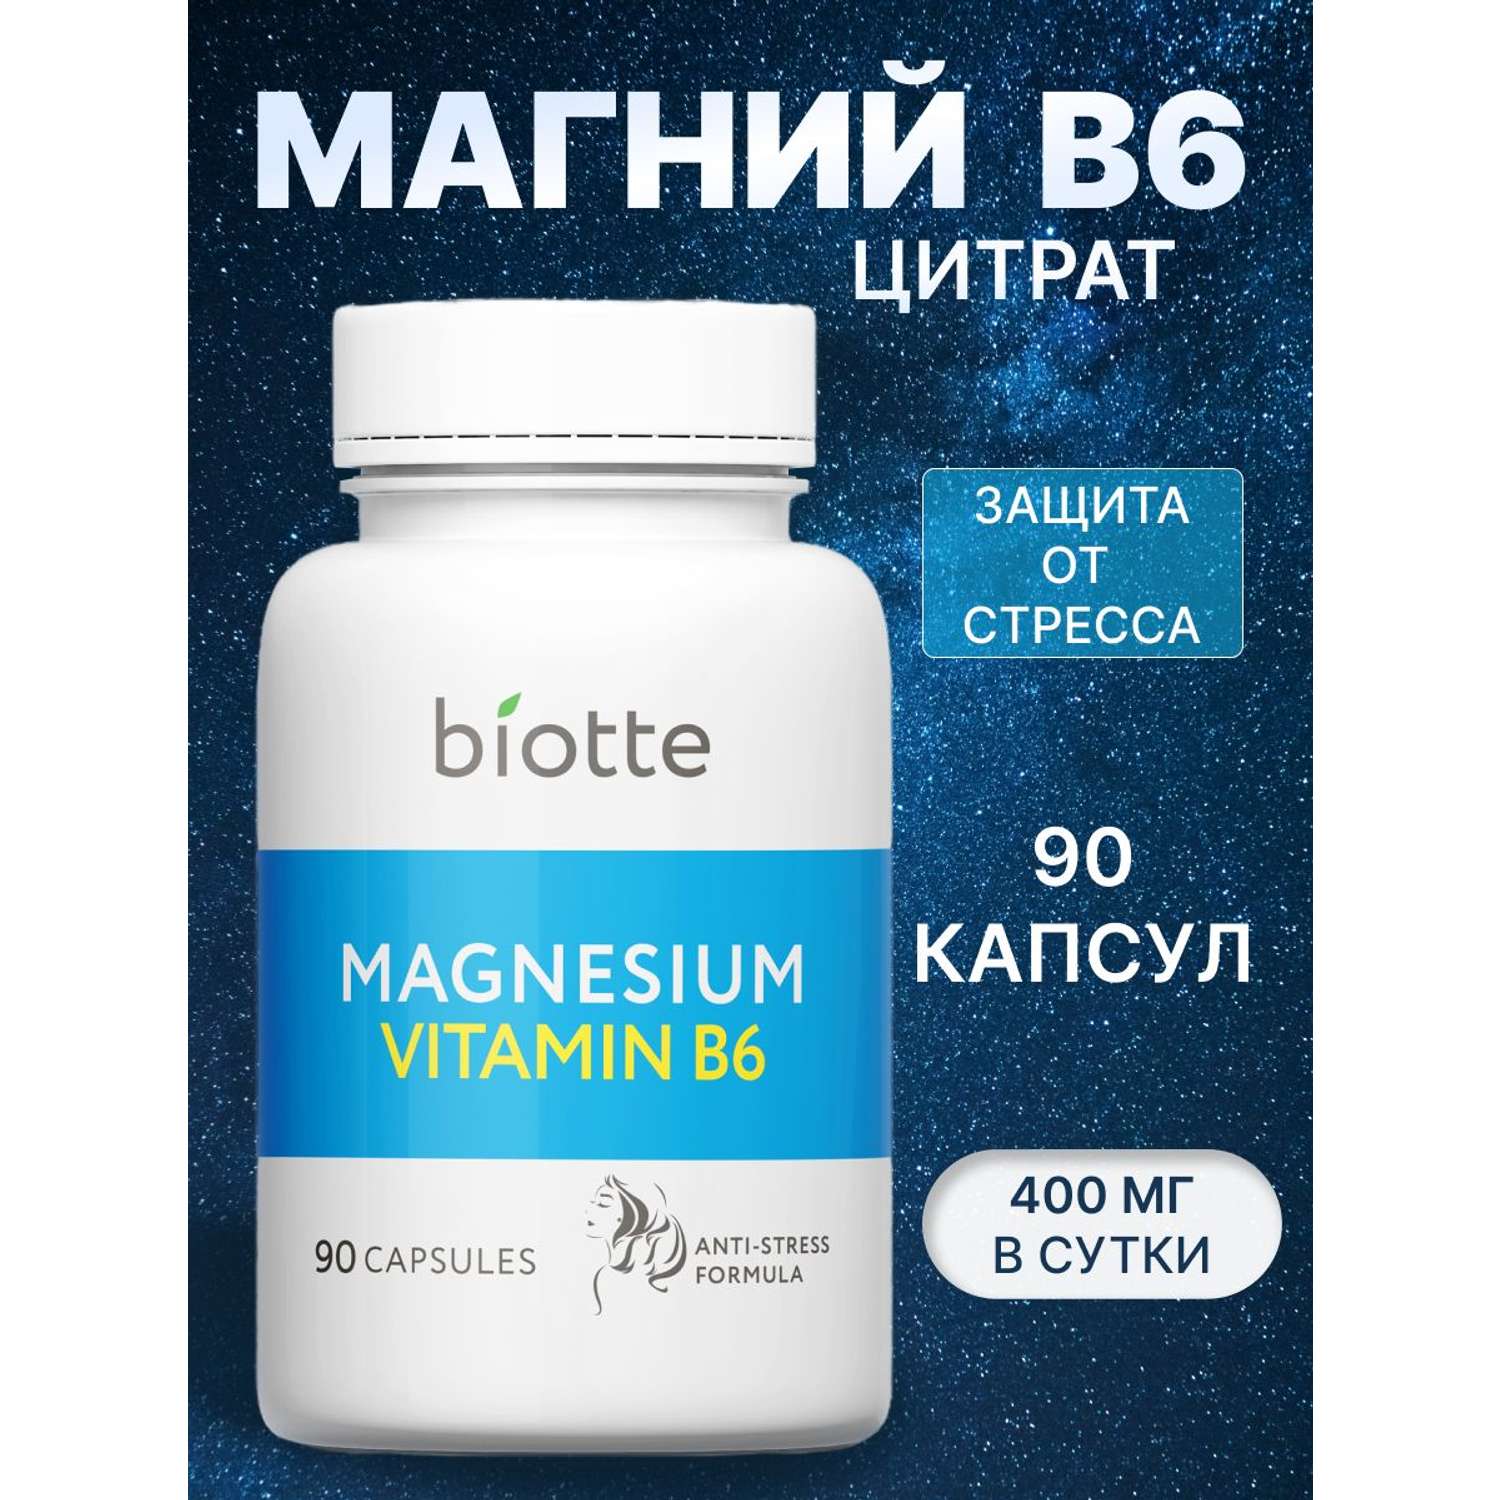 Магний с витамином В6 комплекс BIOTTE magnesium B6 для взрослых БАД 90 капсул - фото 1